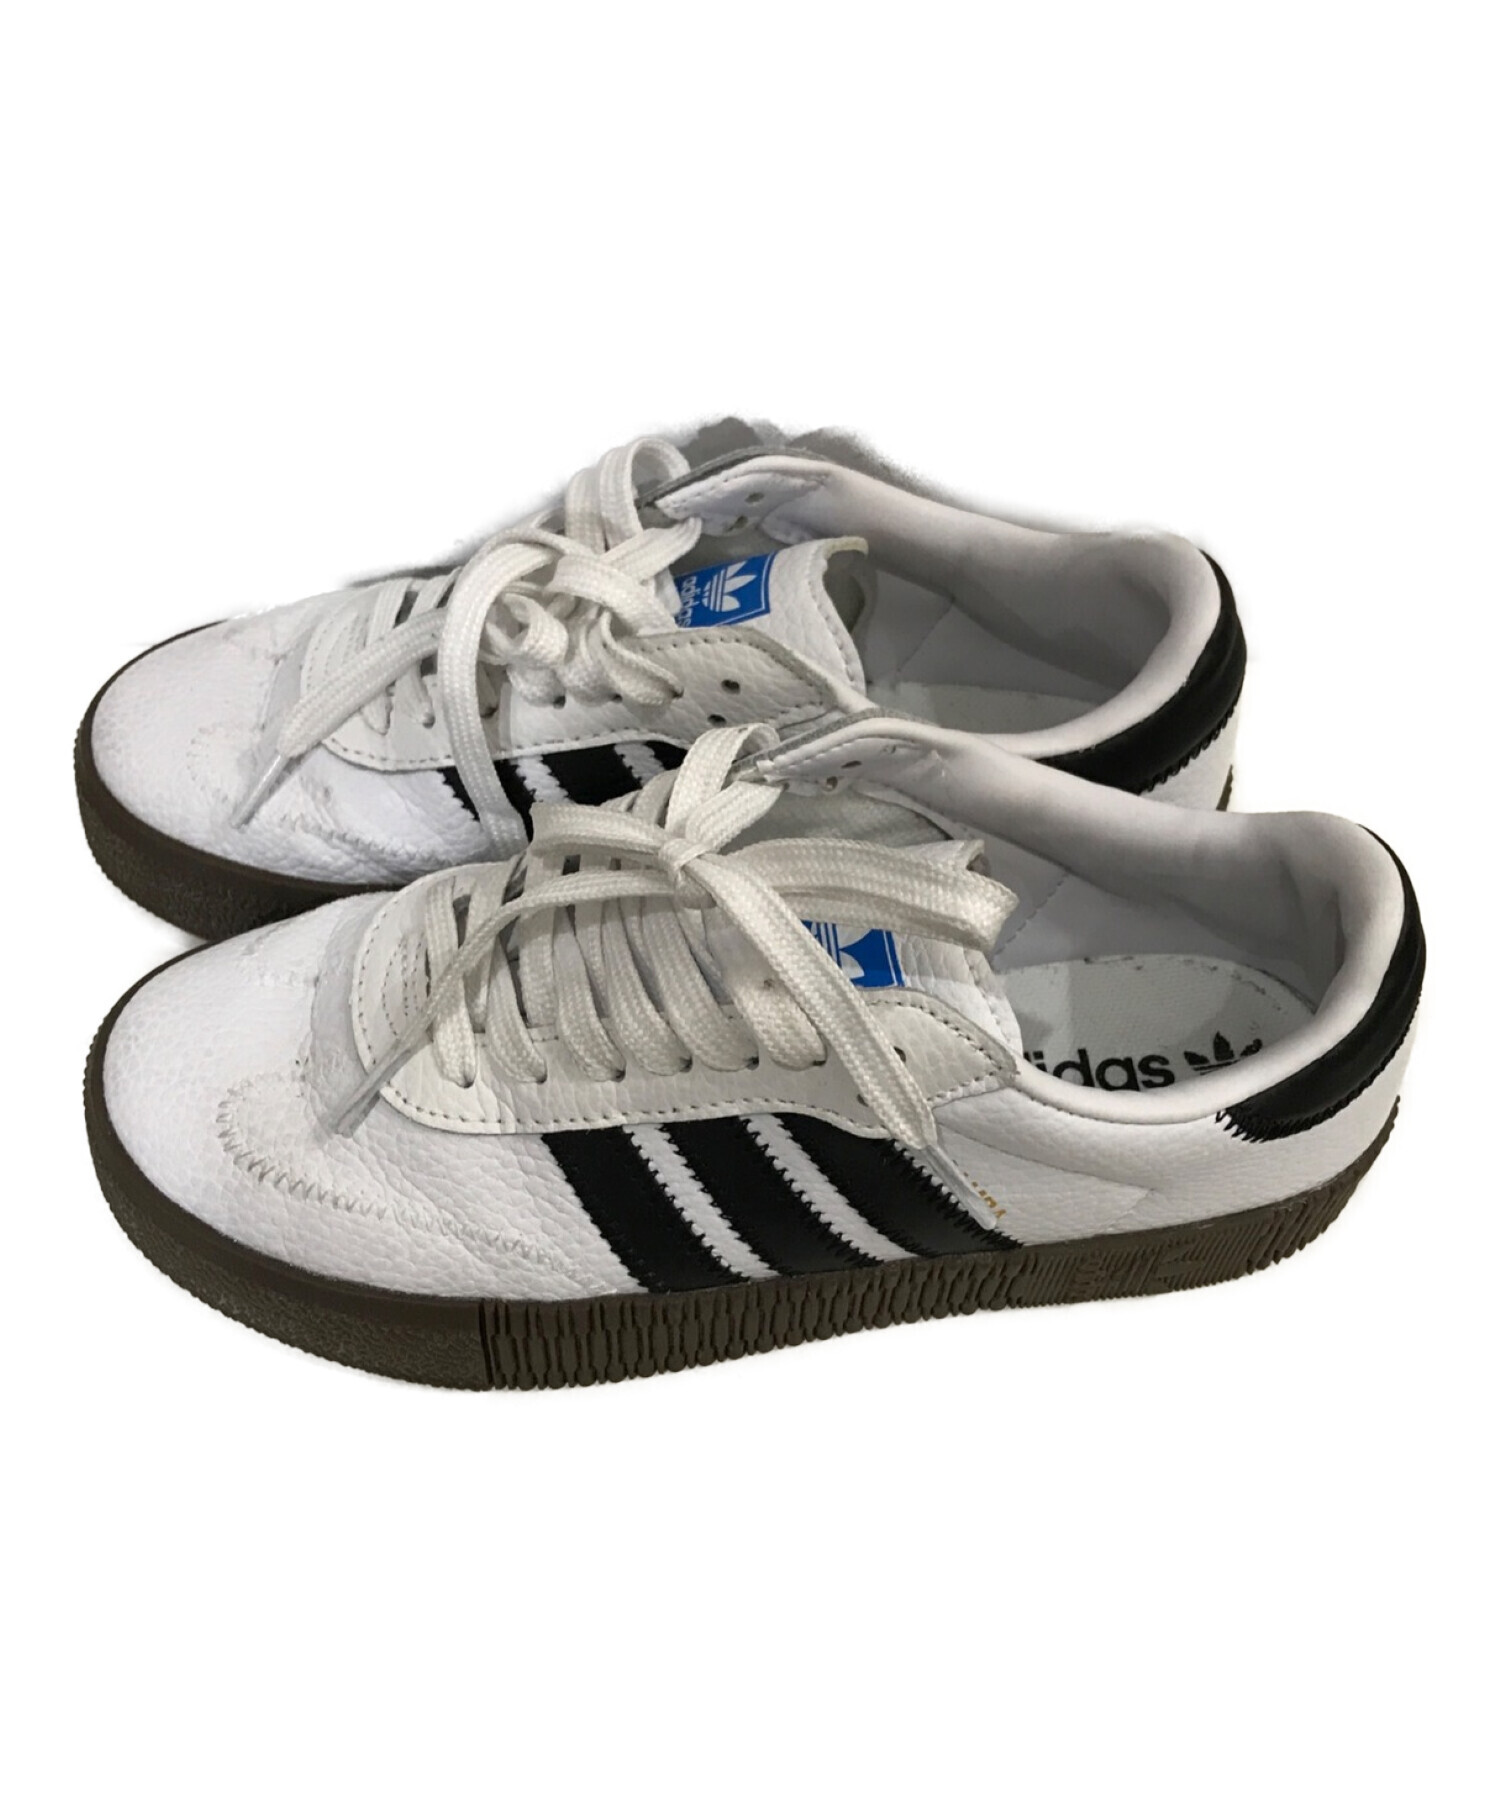 adidas (アディダス) サンバローズ ホワイト サイズ:23.5